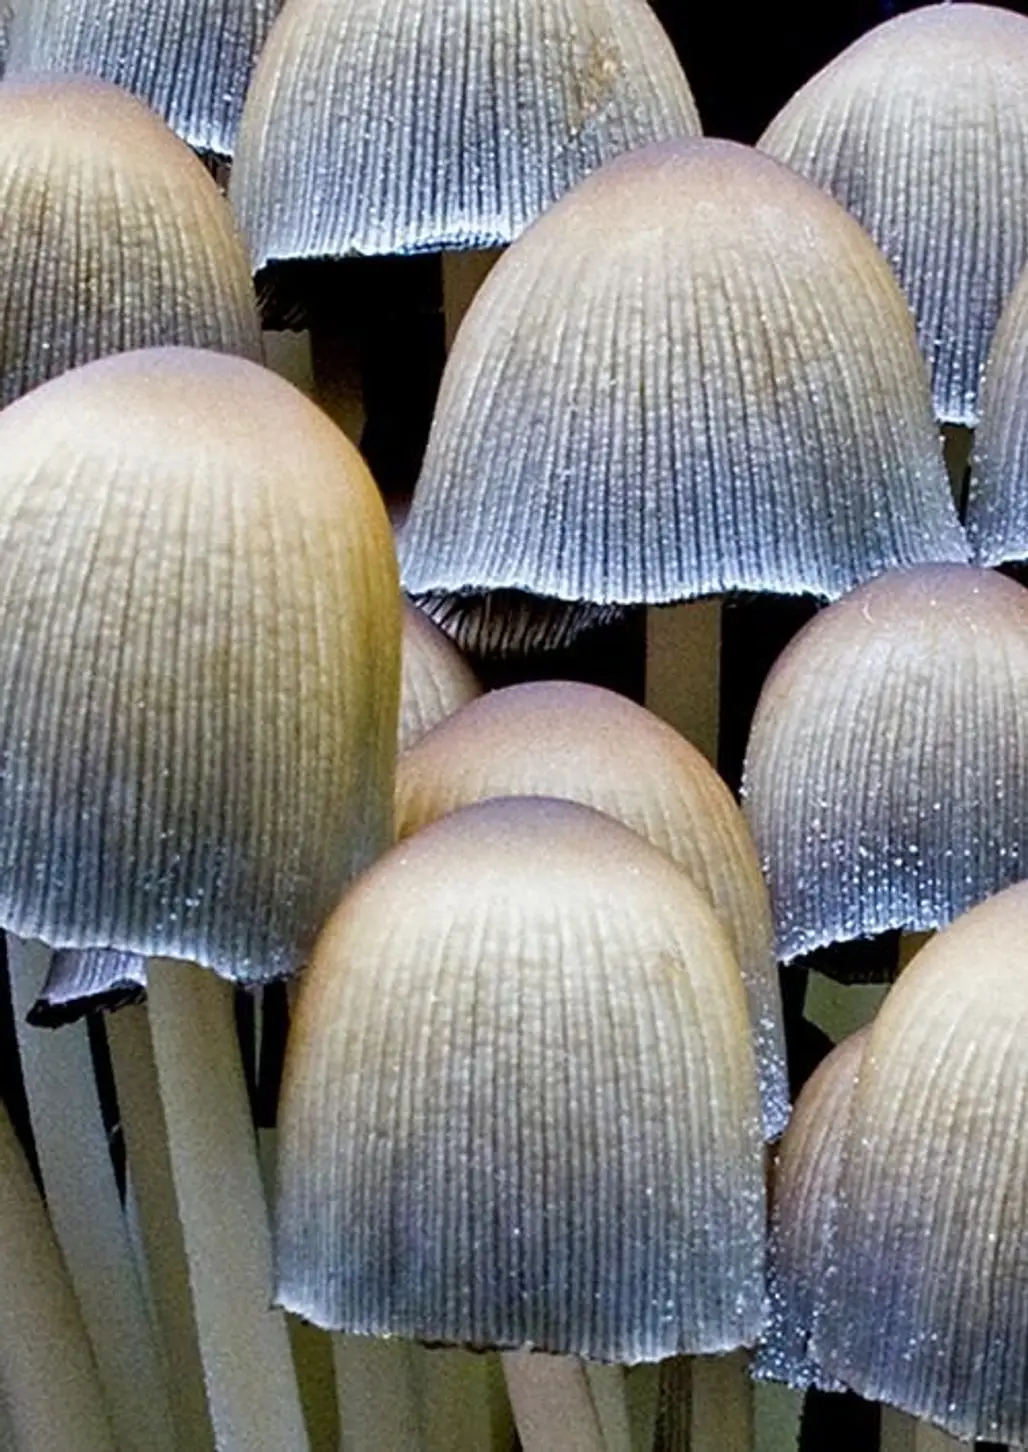 Silver Mushroom